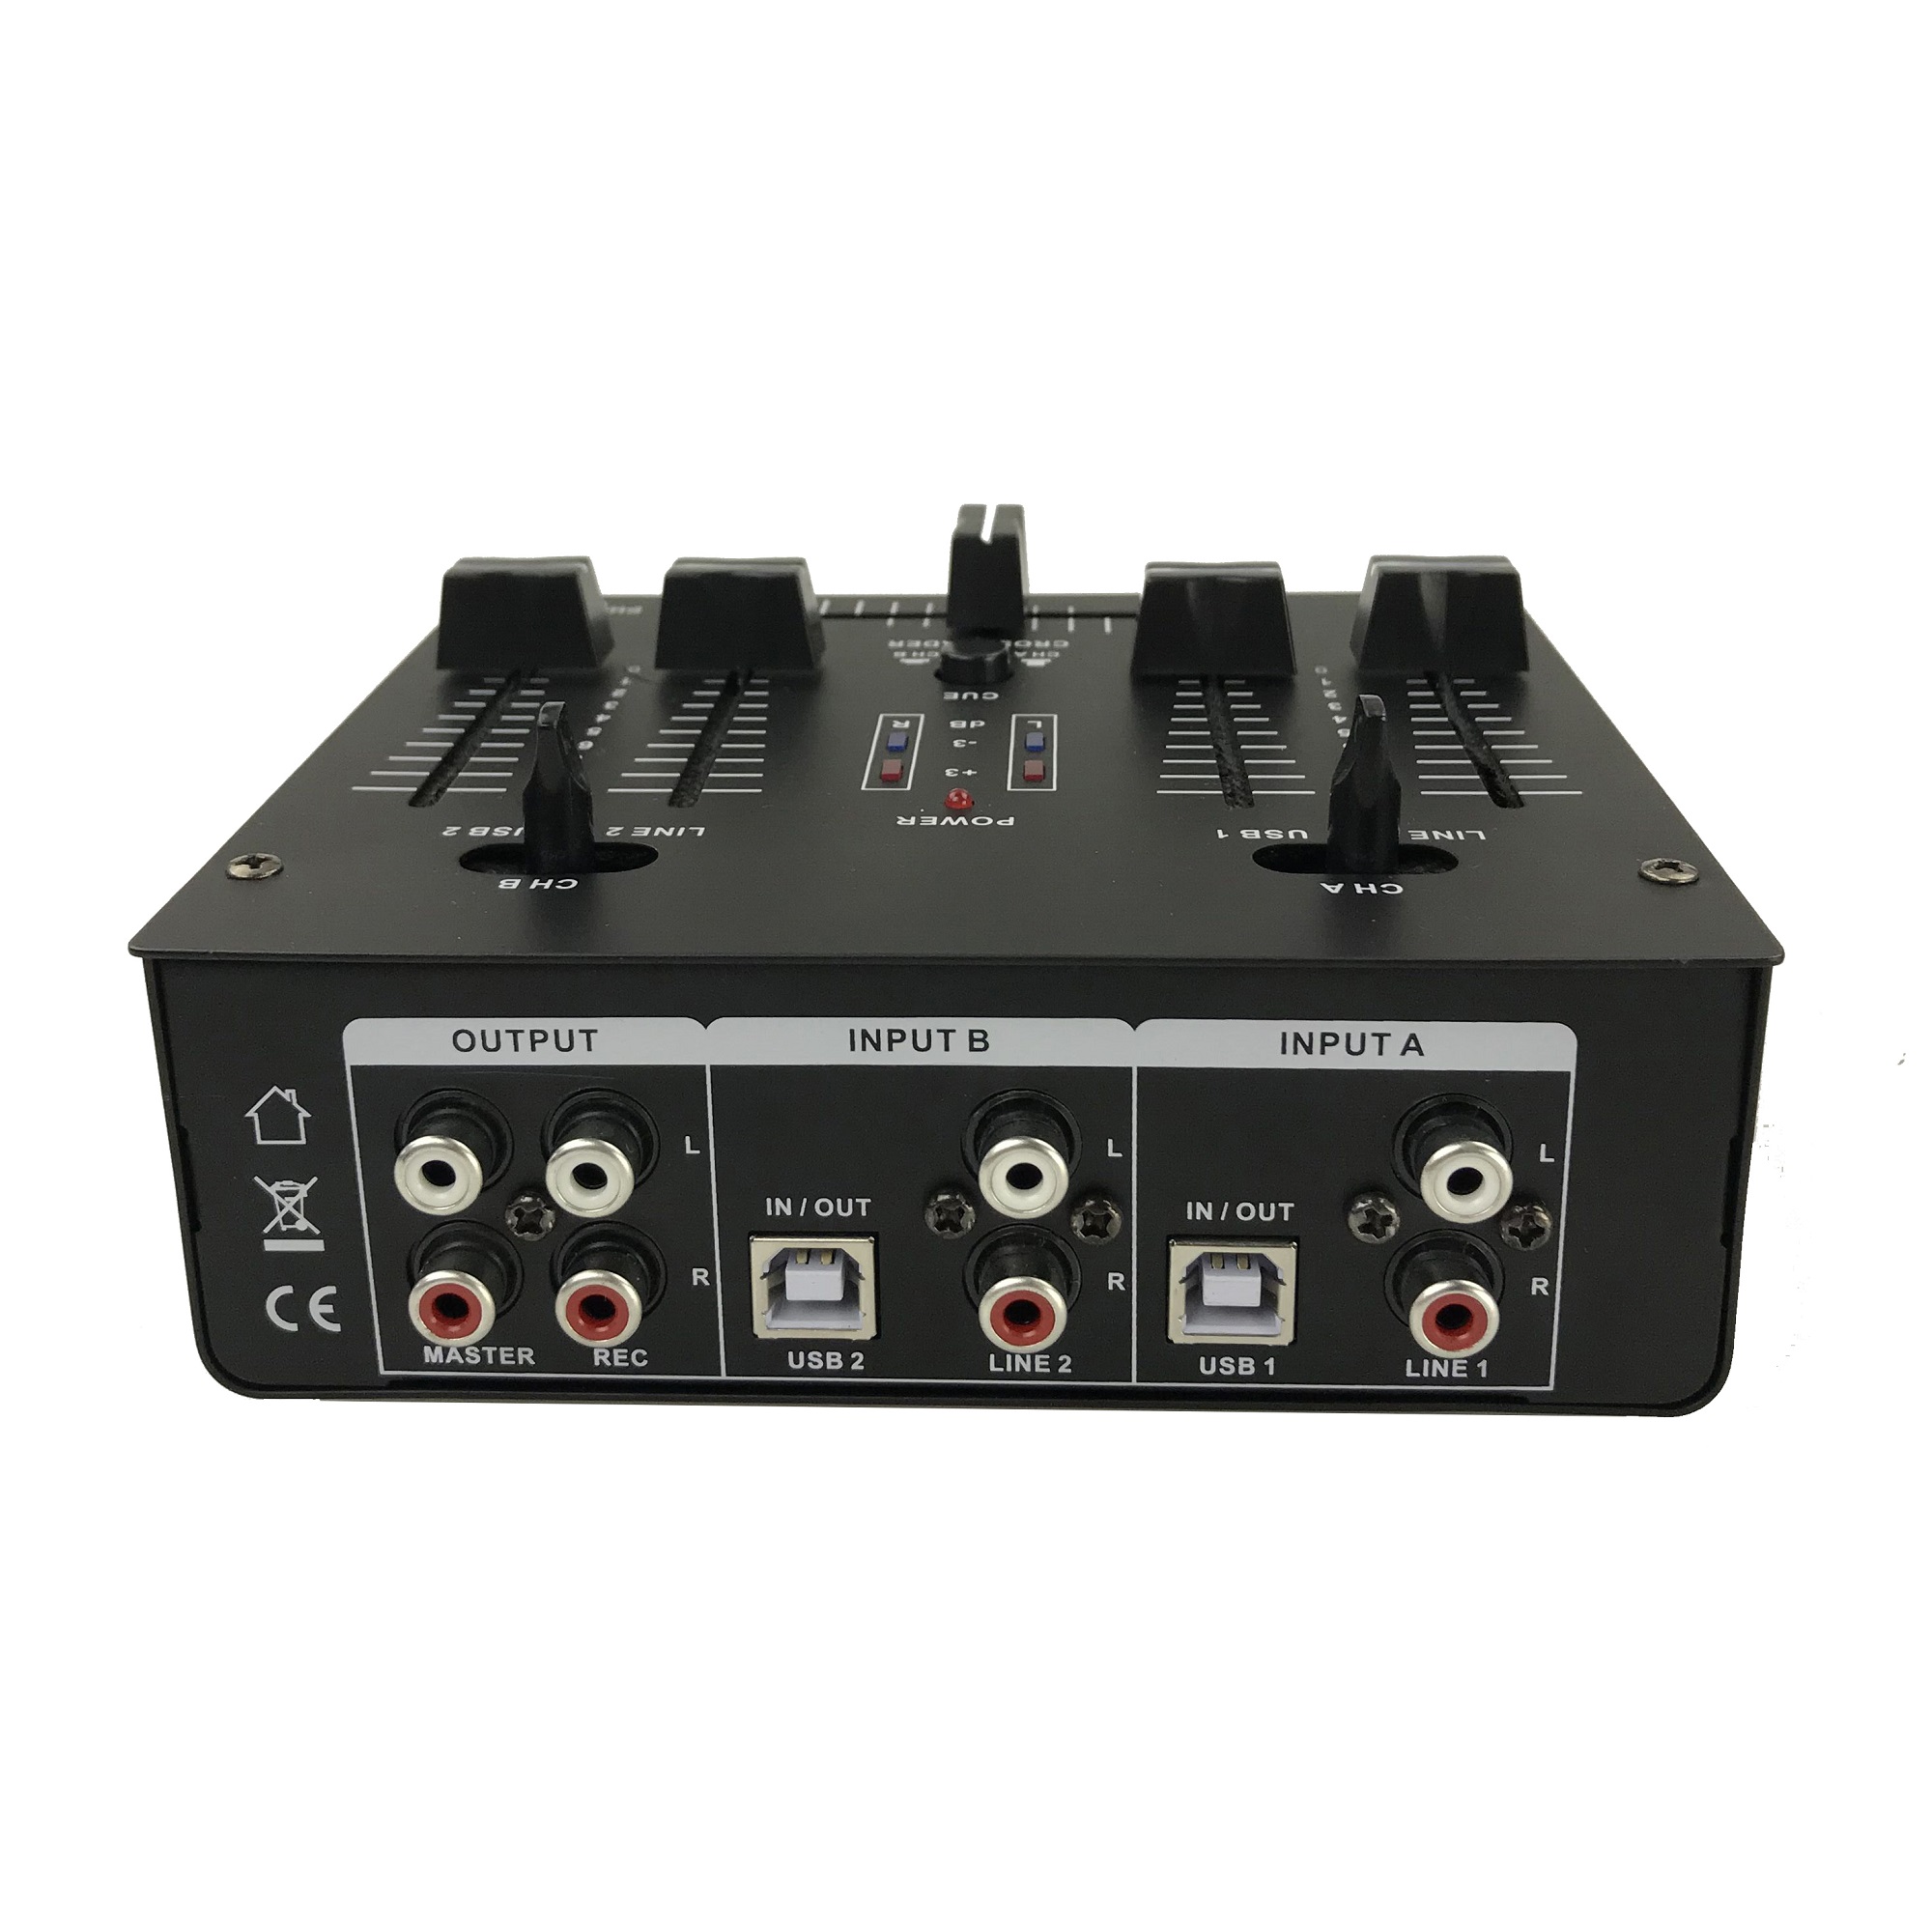 DJM62-PC con 2USB(PC) 2canales 6 entradas Mezclador DJ